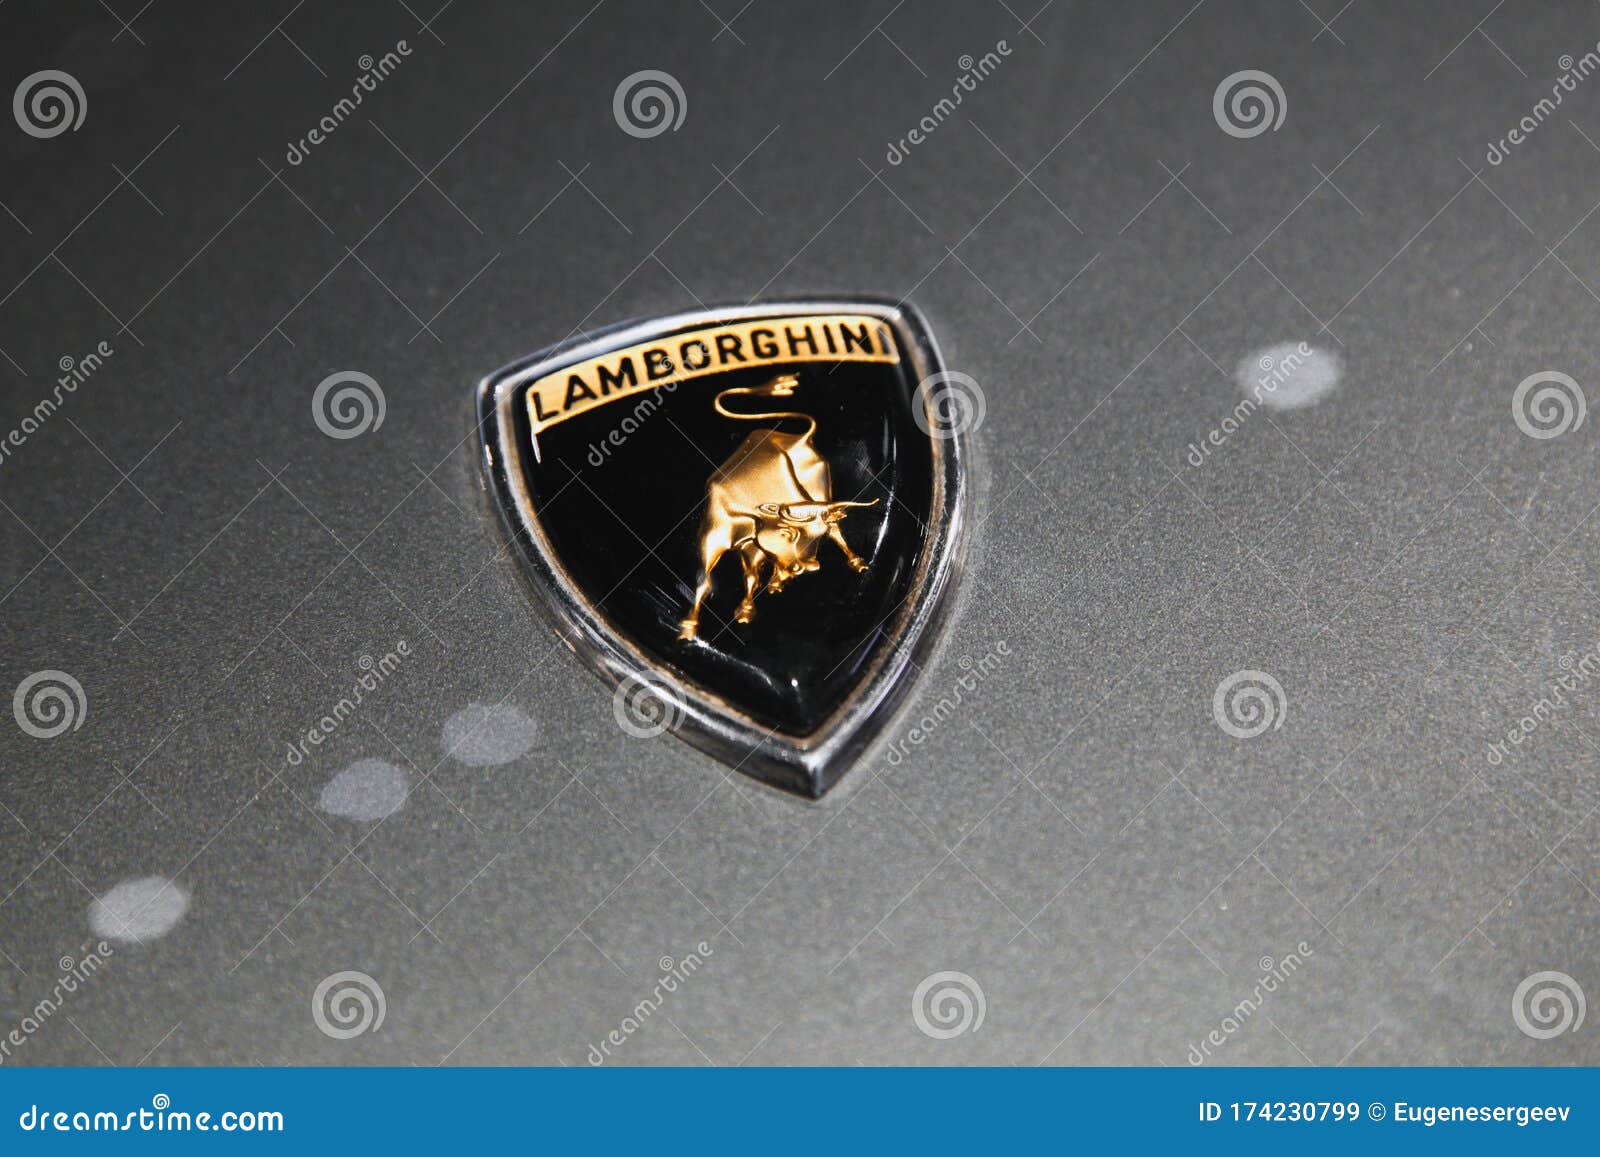 Il Simbolo Del Lamborghini è Su Un Primo Piano Della Pac Dell'auto Immagine  Stock Editoriale - Immagine di trasporto, illustrativo: 174230799